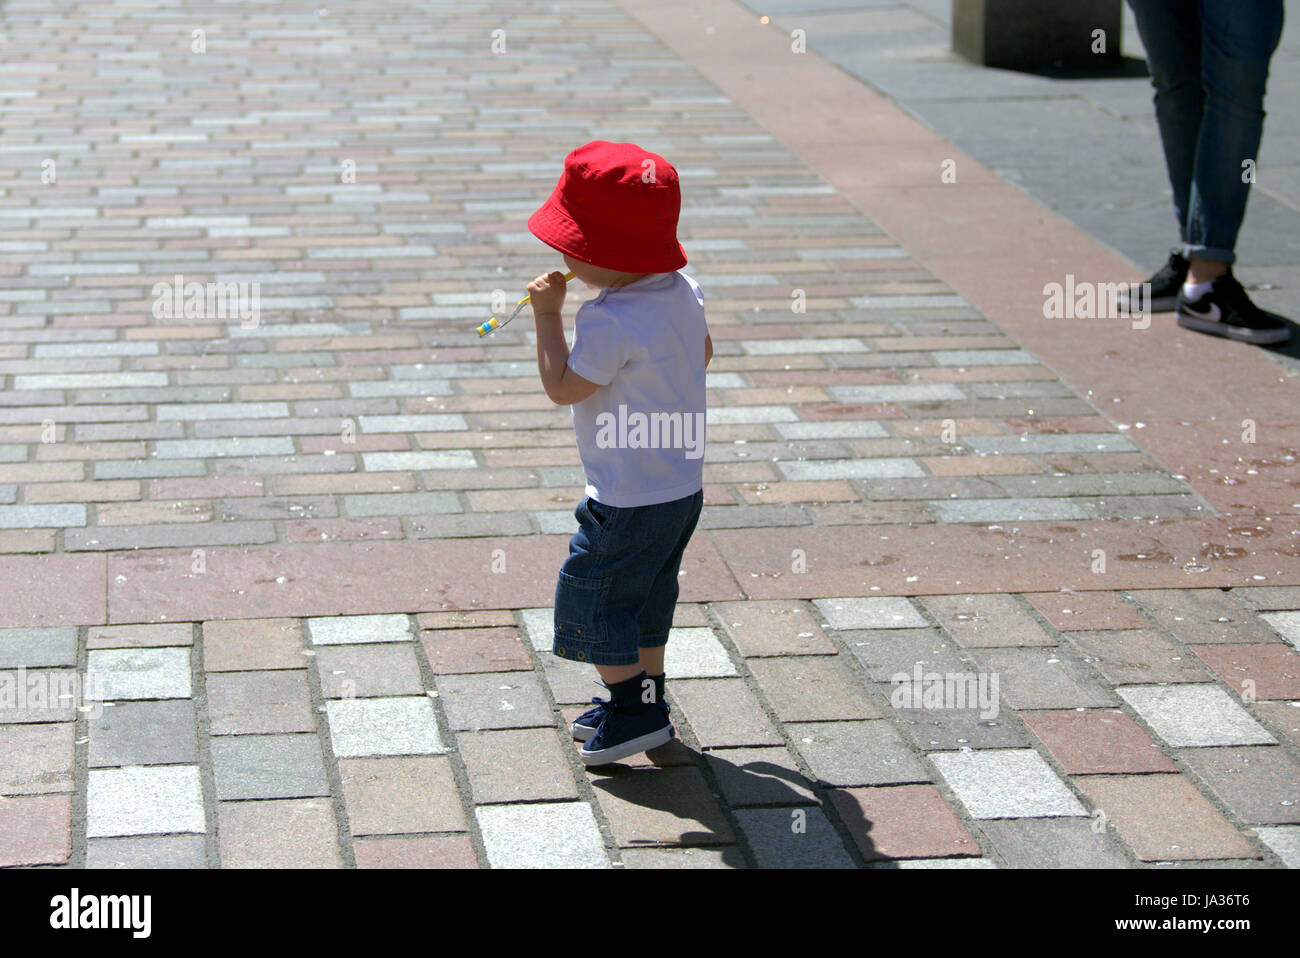 Petit garçon dans red hat journée ensoleillée Banque D'Images